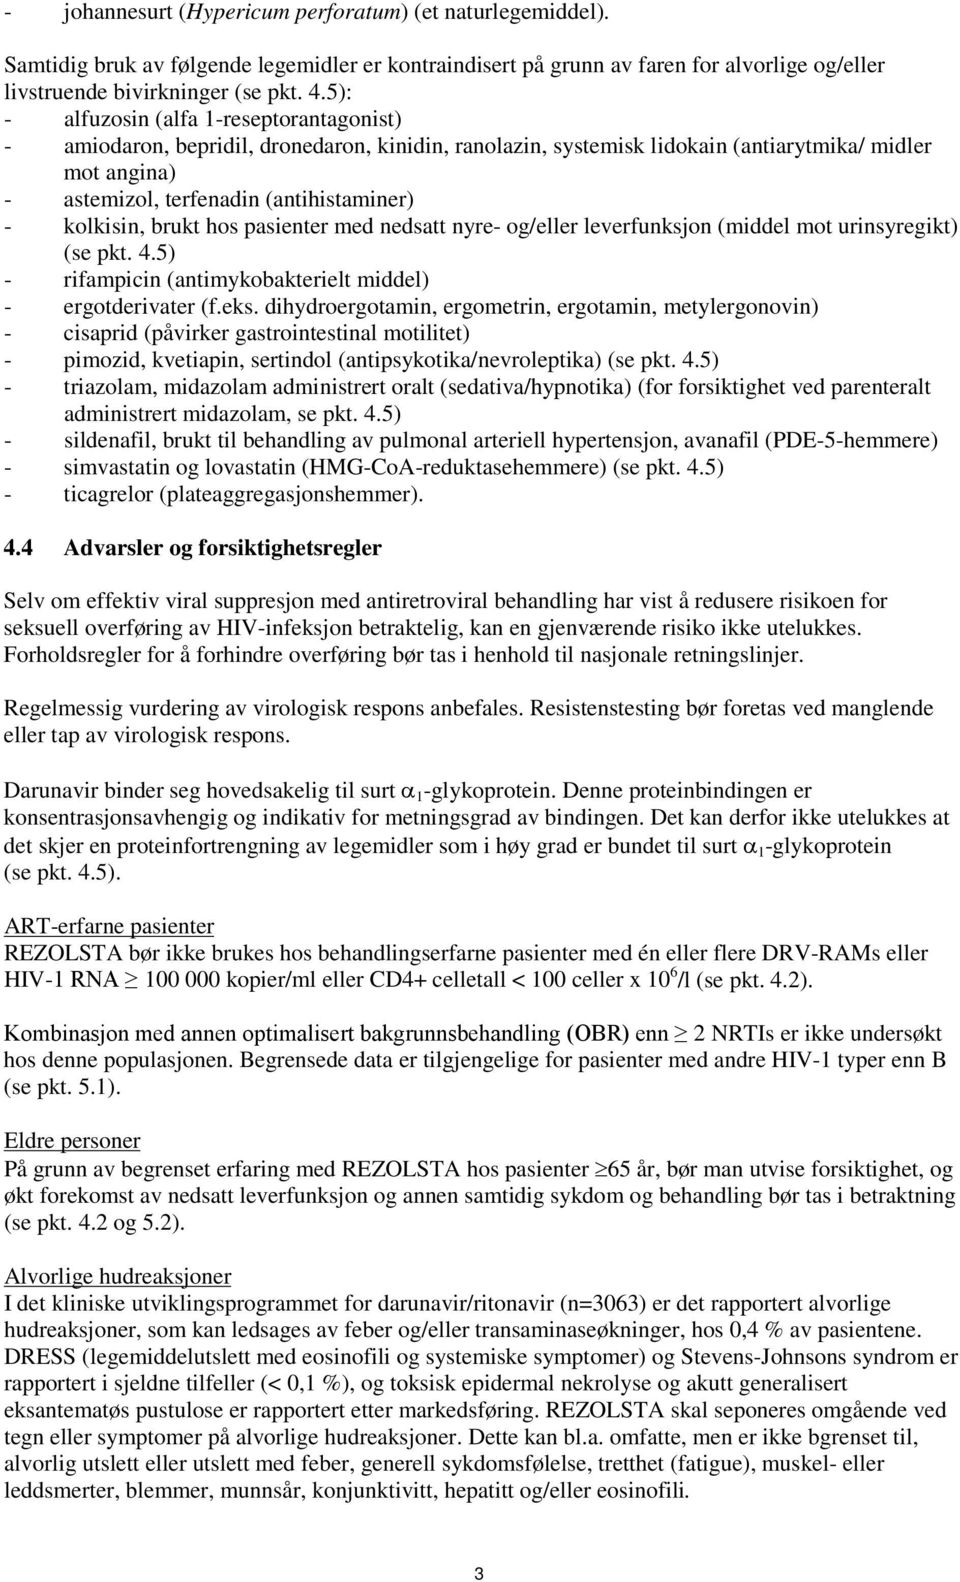 kolkisin, brukt hos pasienter med nedsatt nyre- og/eller leverfunksjon (middel mot urinsyregikt) (se pkt. 4.5) - rifampicin (antimykobakterielt middel) - ergotderivater (f.eks.